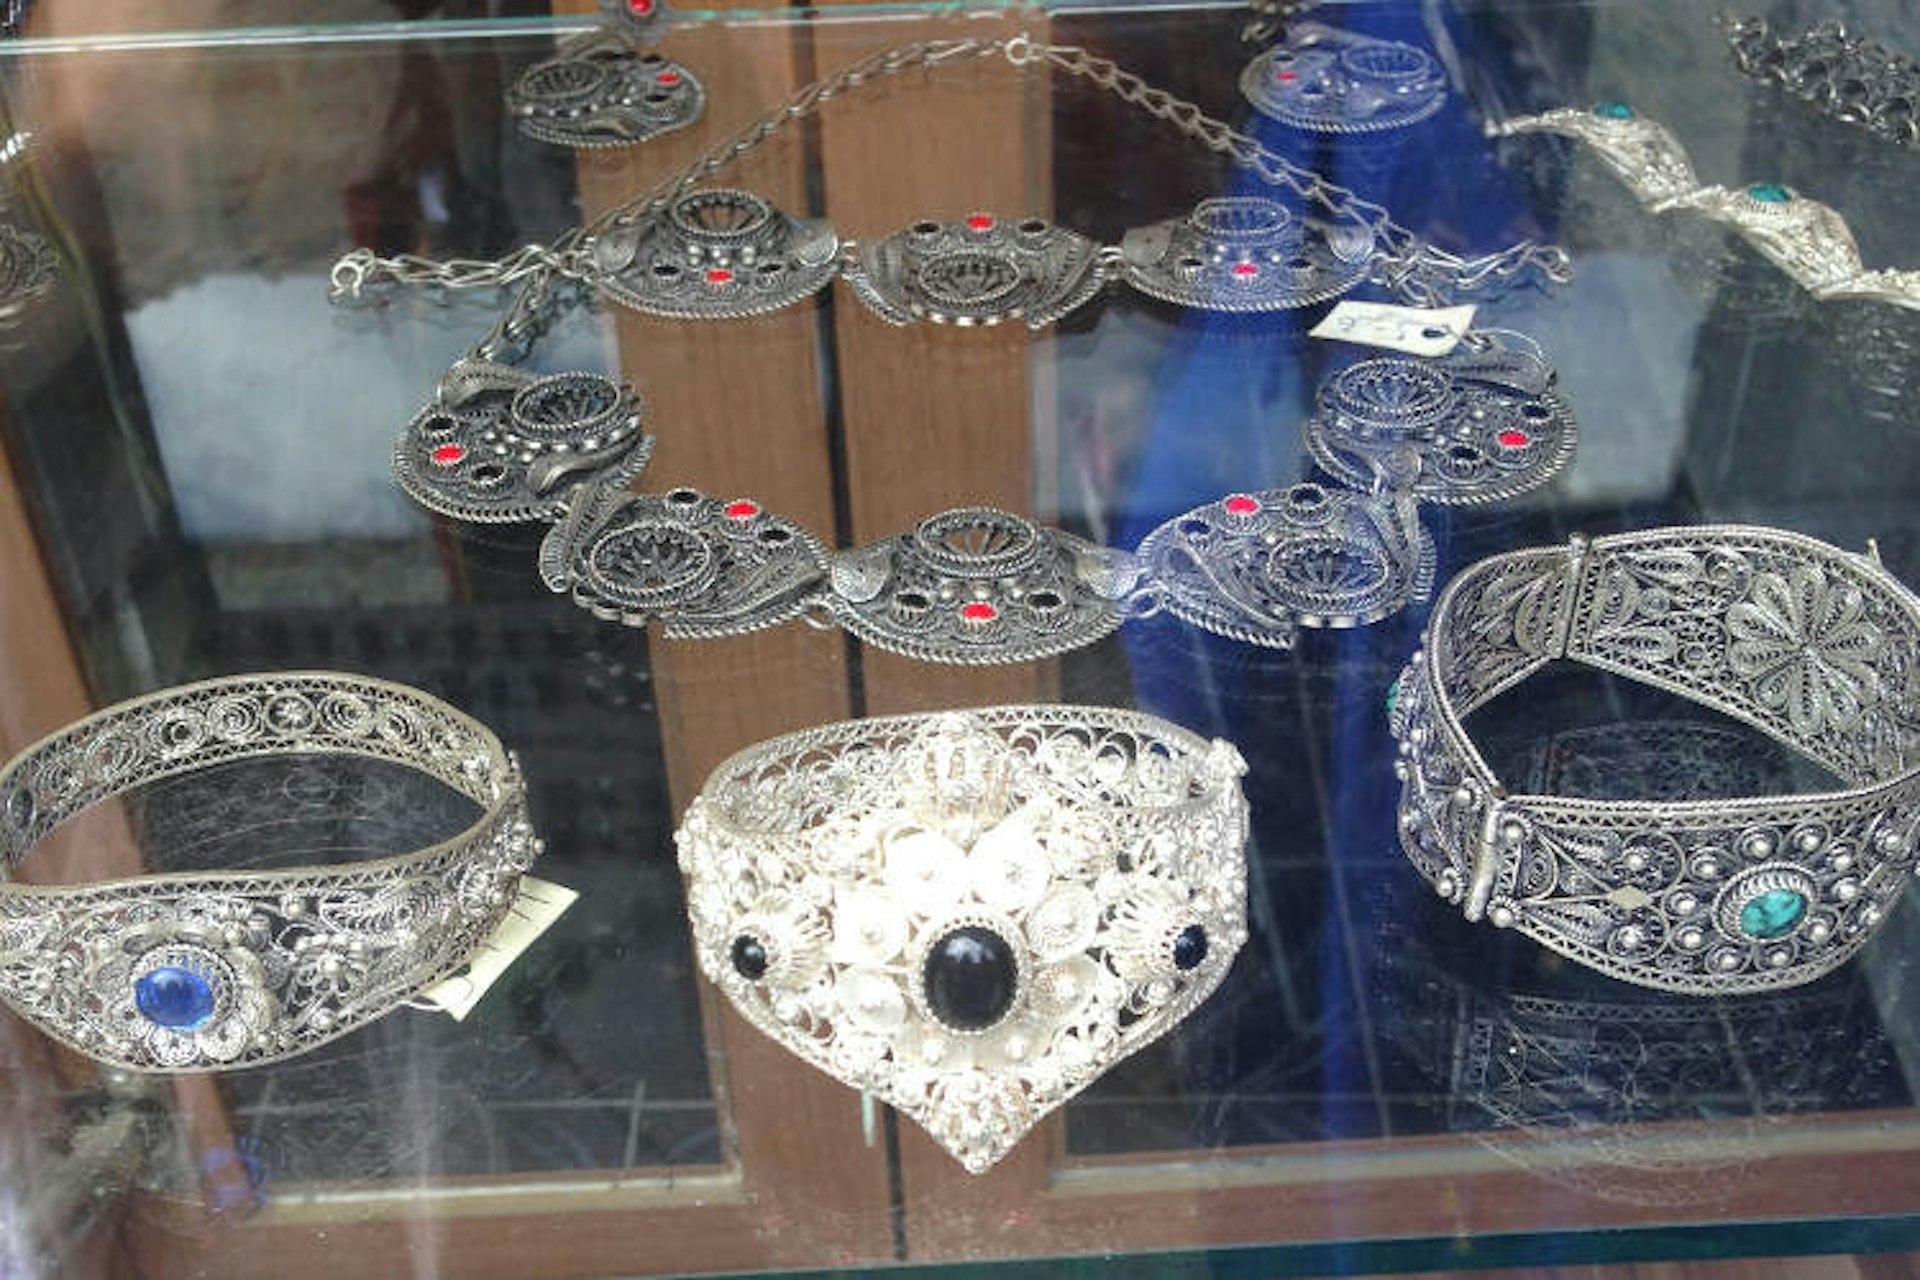 Jewellery on display in Filigrani's store in Prizren. Image by Brana Vladisavljevic / Lonely Planet